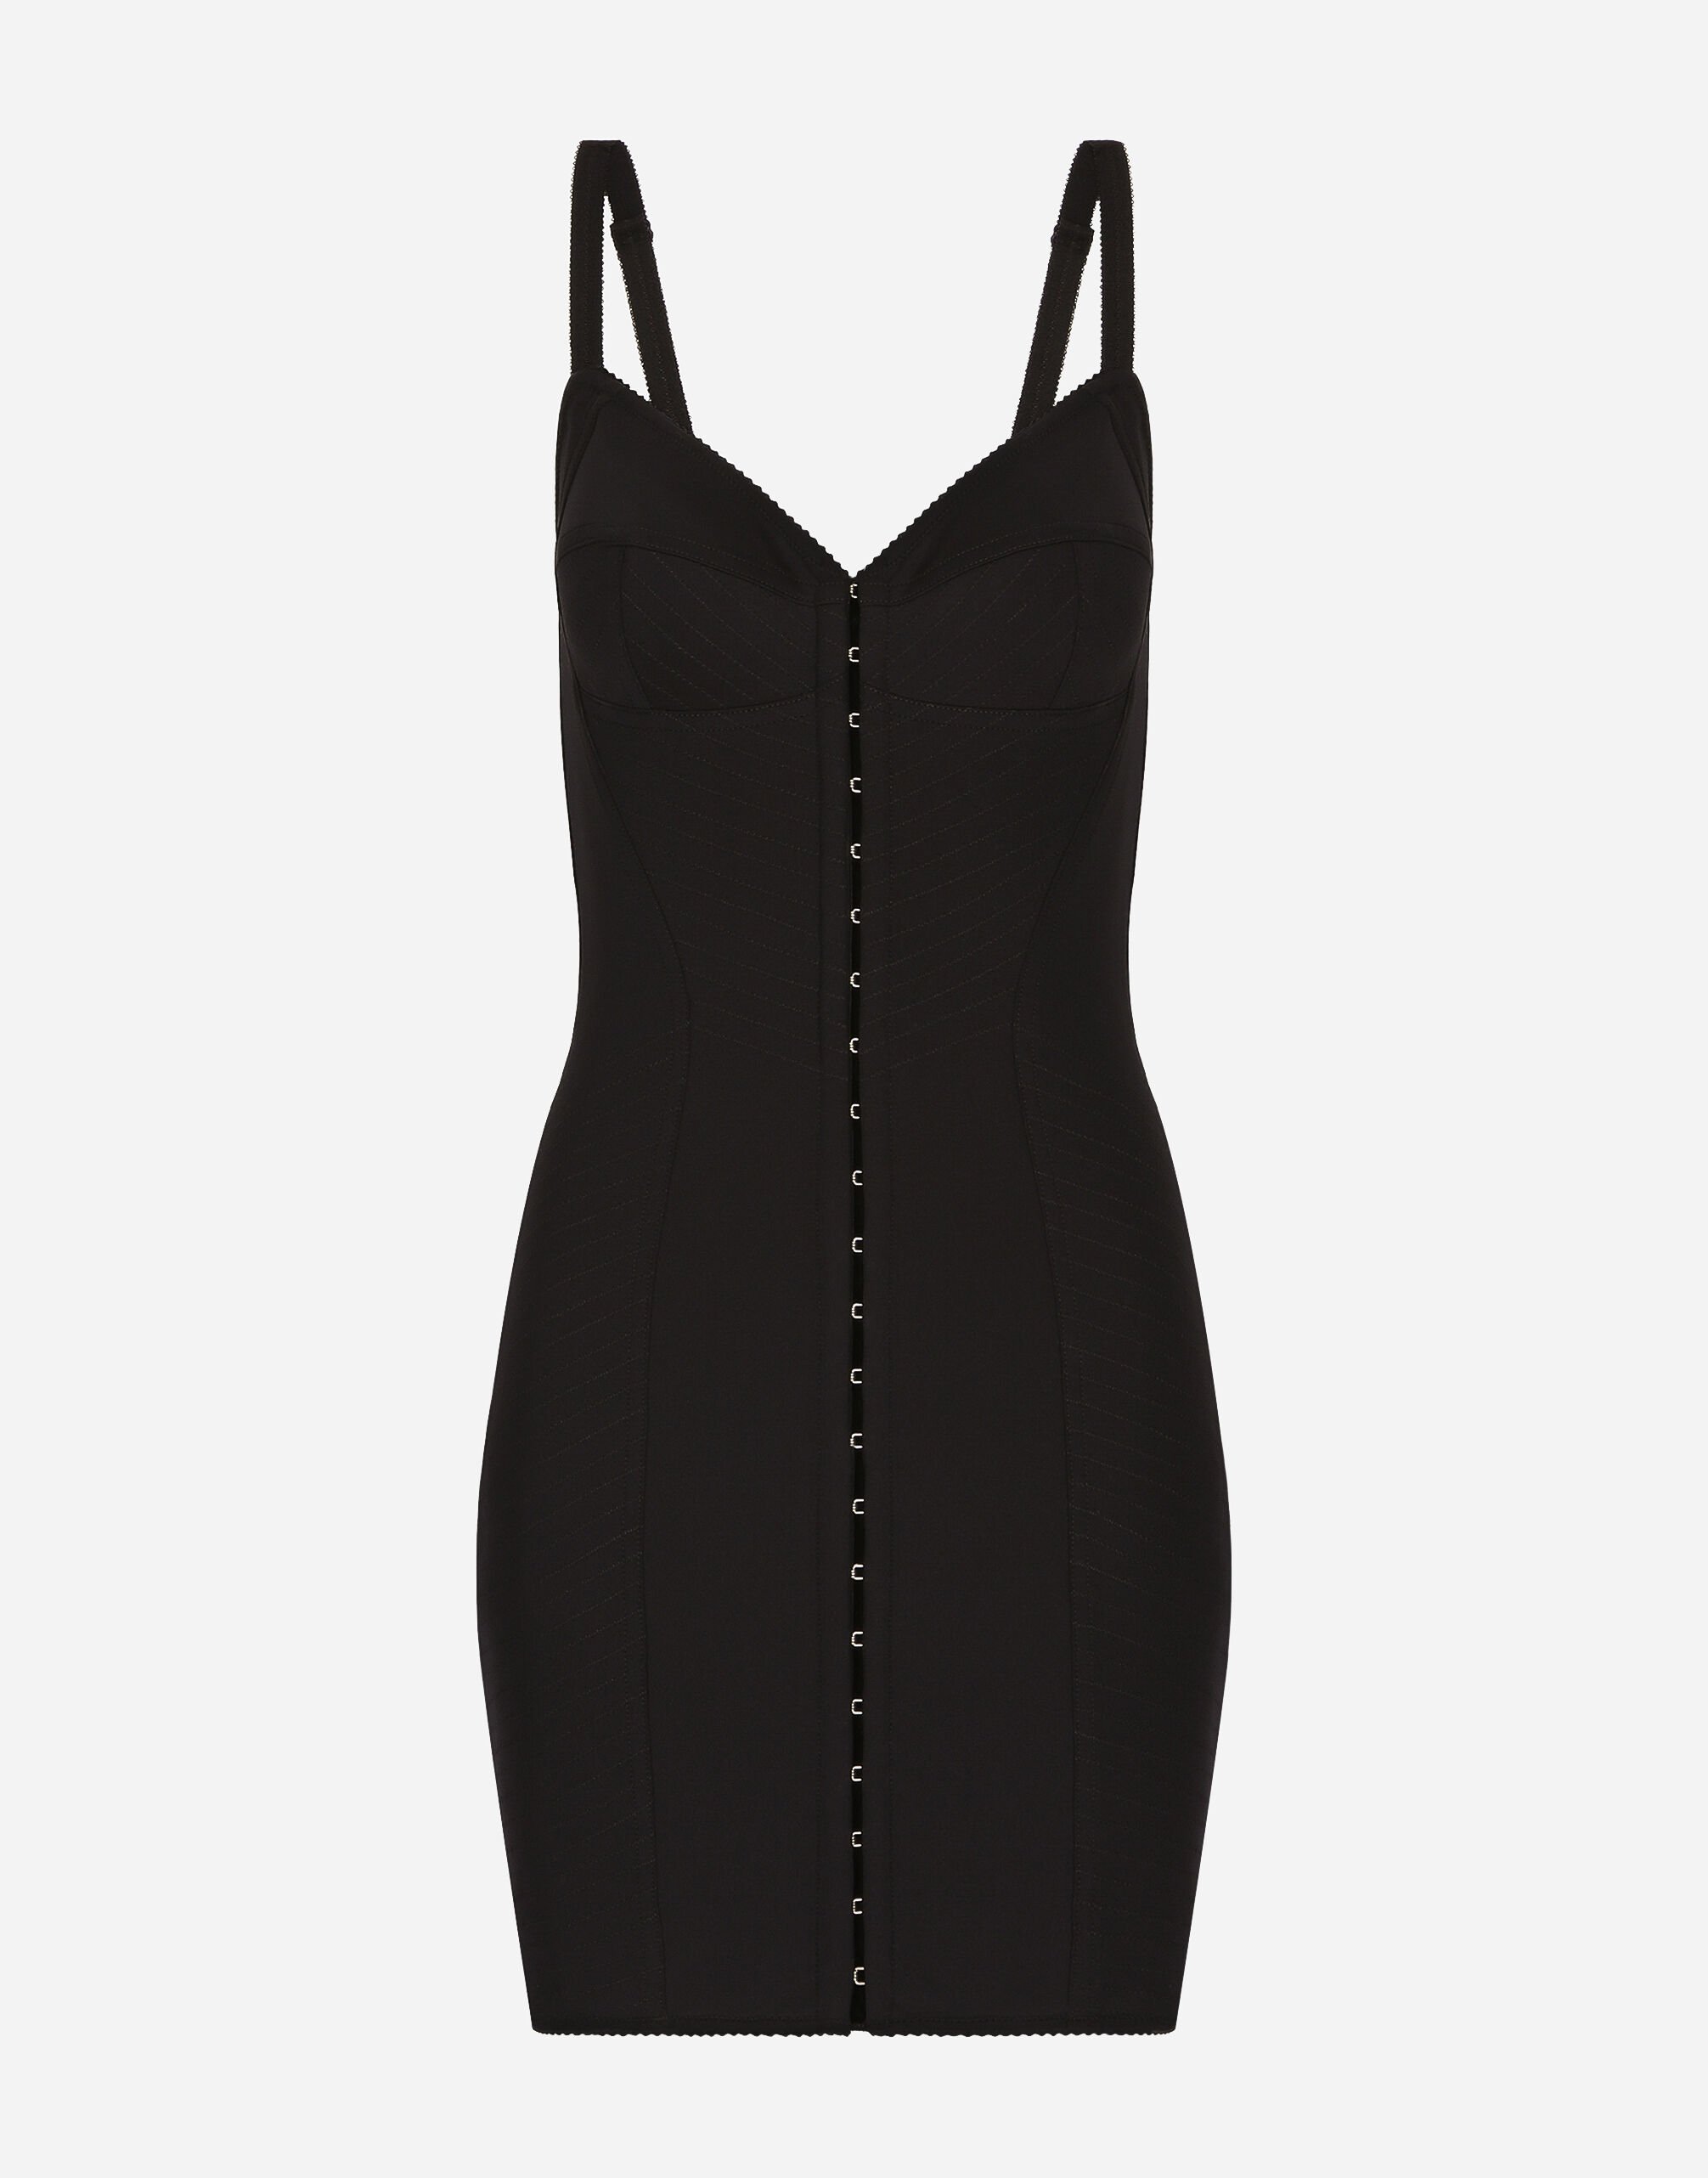 Dolce & Gabbana Short light technical jersey dress Black VG6186VN187